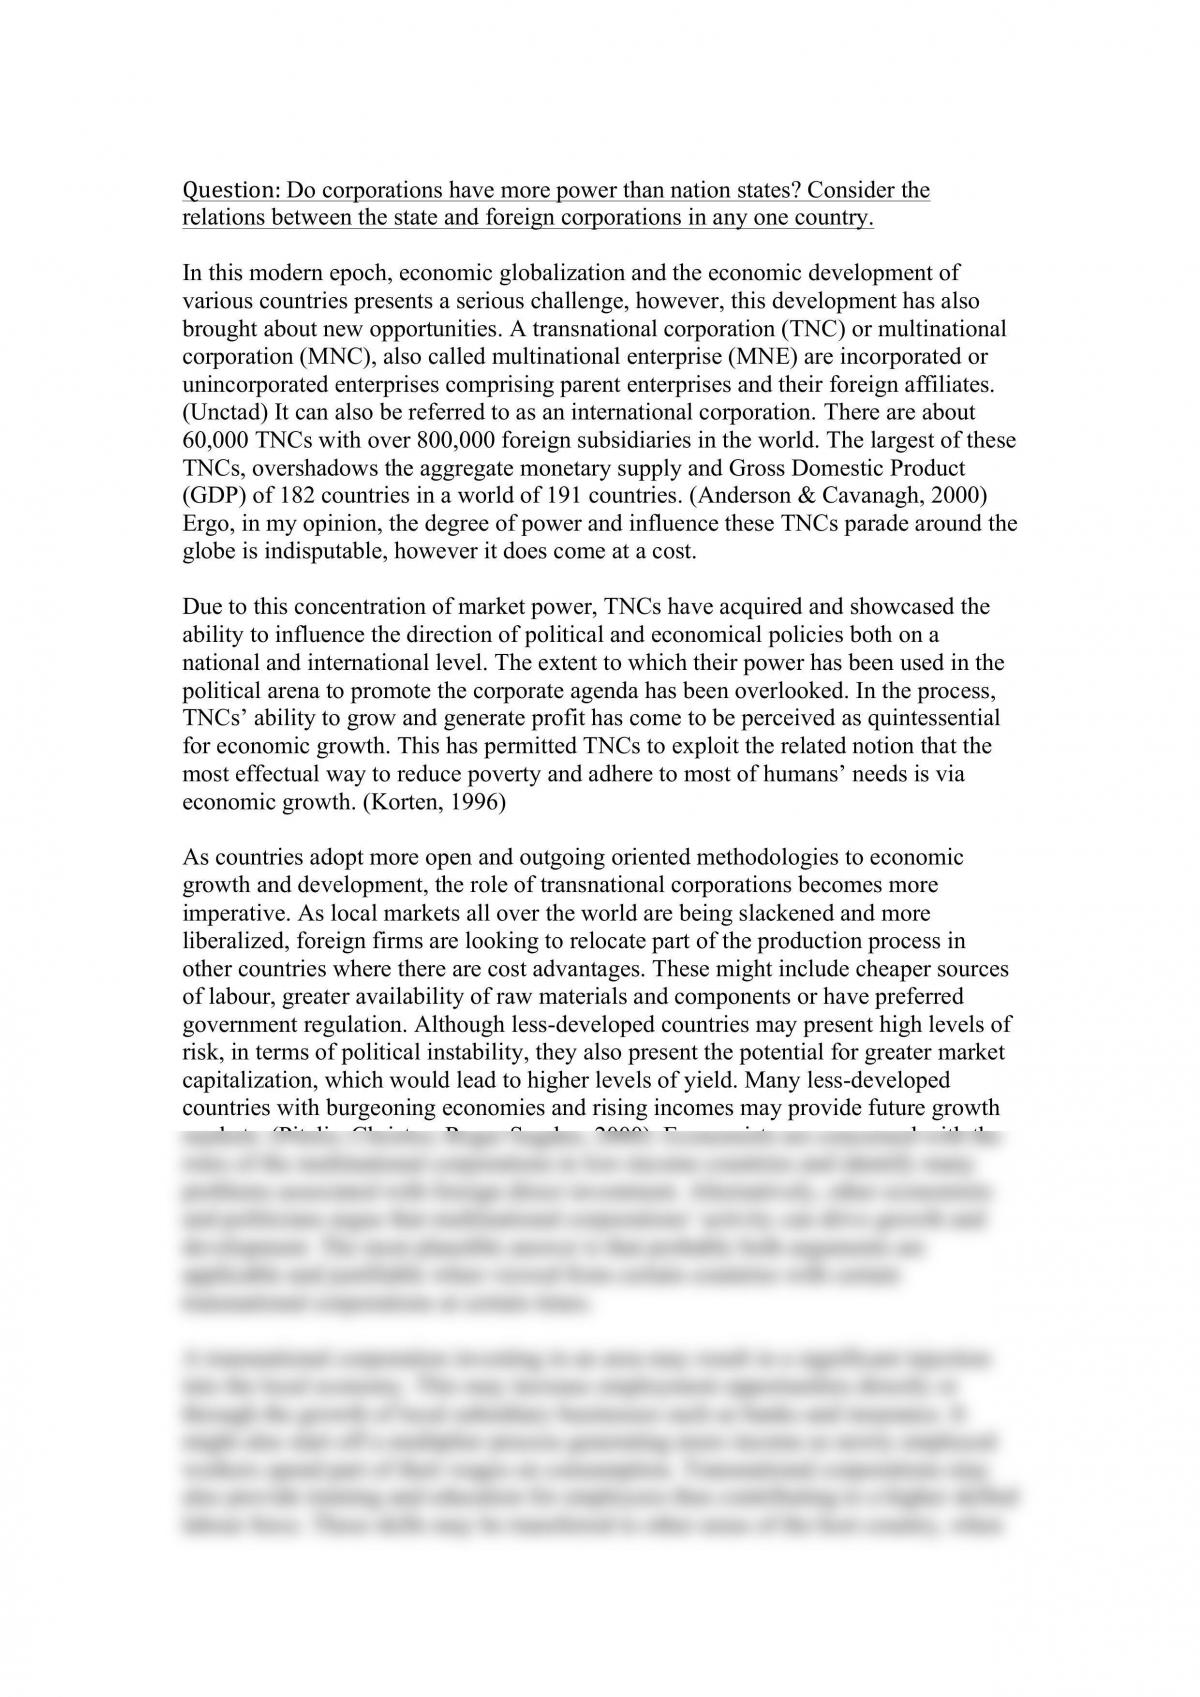 Ecop1003 Major Essay 40% - Page 1